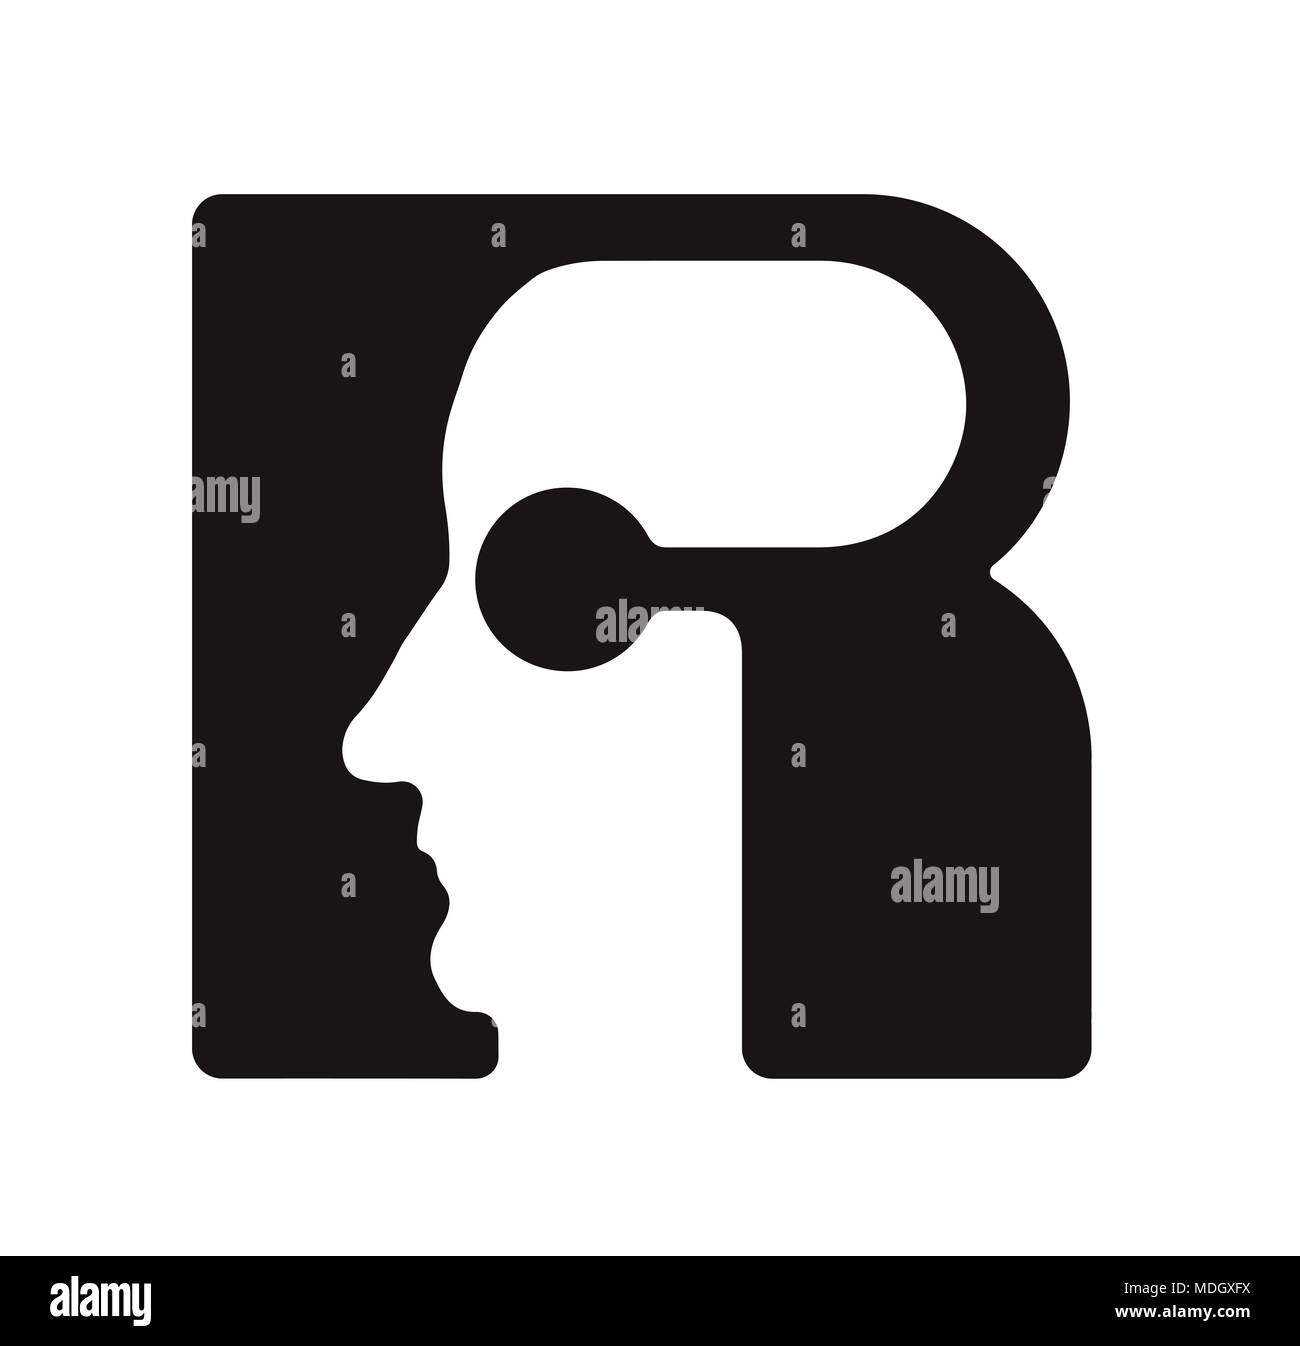 R r Logo logotipo - font inglese lettera maiuscola - il volto umano del robot cyborg, per computer, tema scienza etc, in stile retrò. Foto Stock